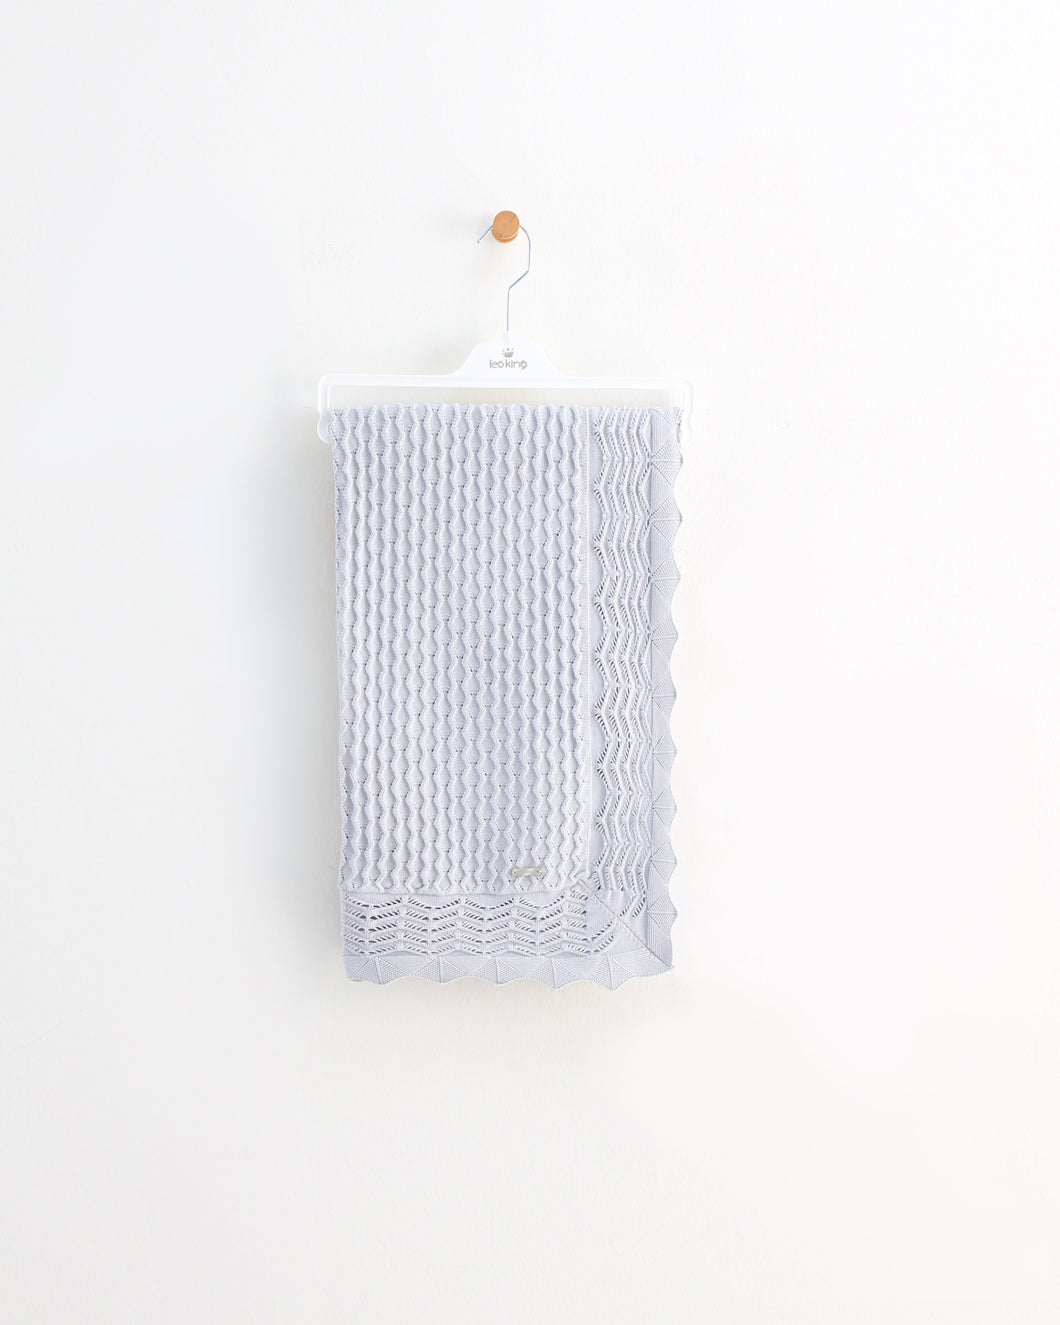 6353 Grey Knitted Blanket /Shawl